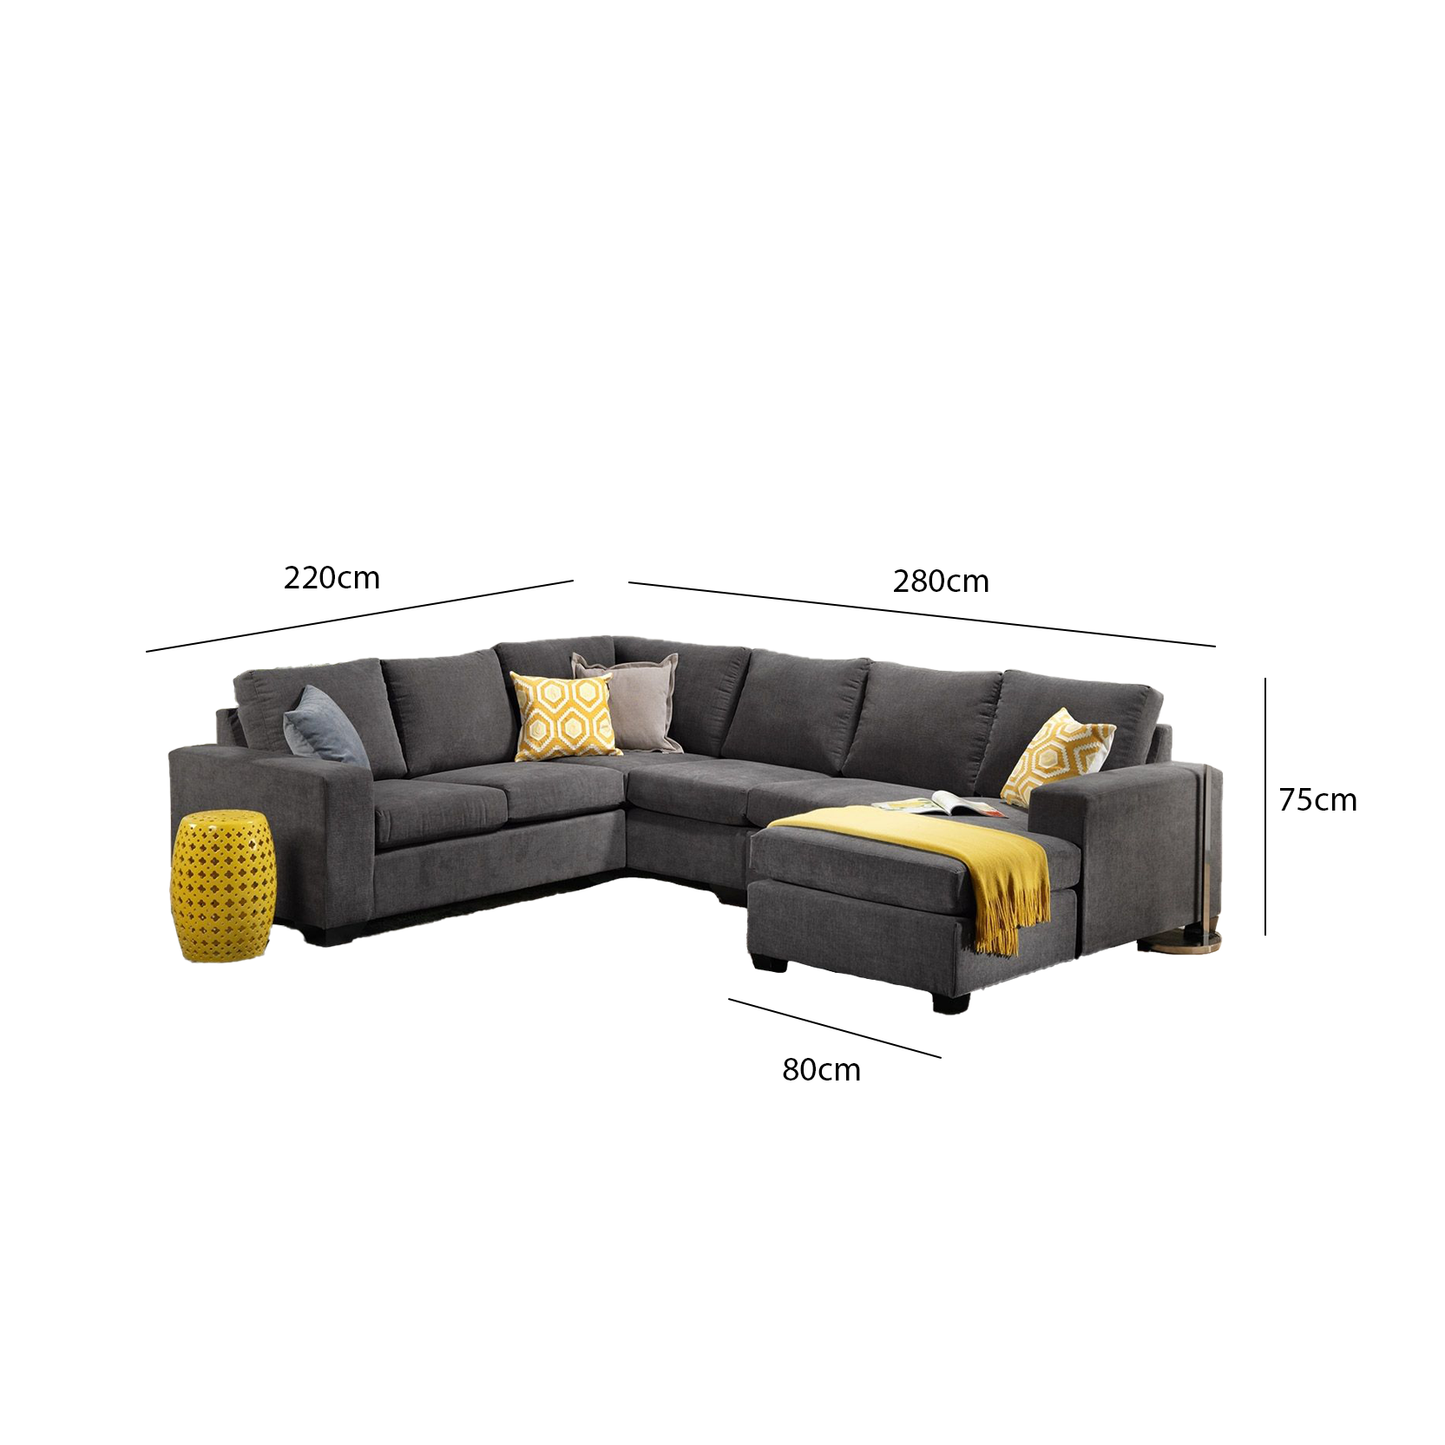 Corner sofa 280 x 220 cm - OUR33